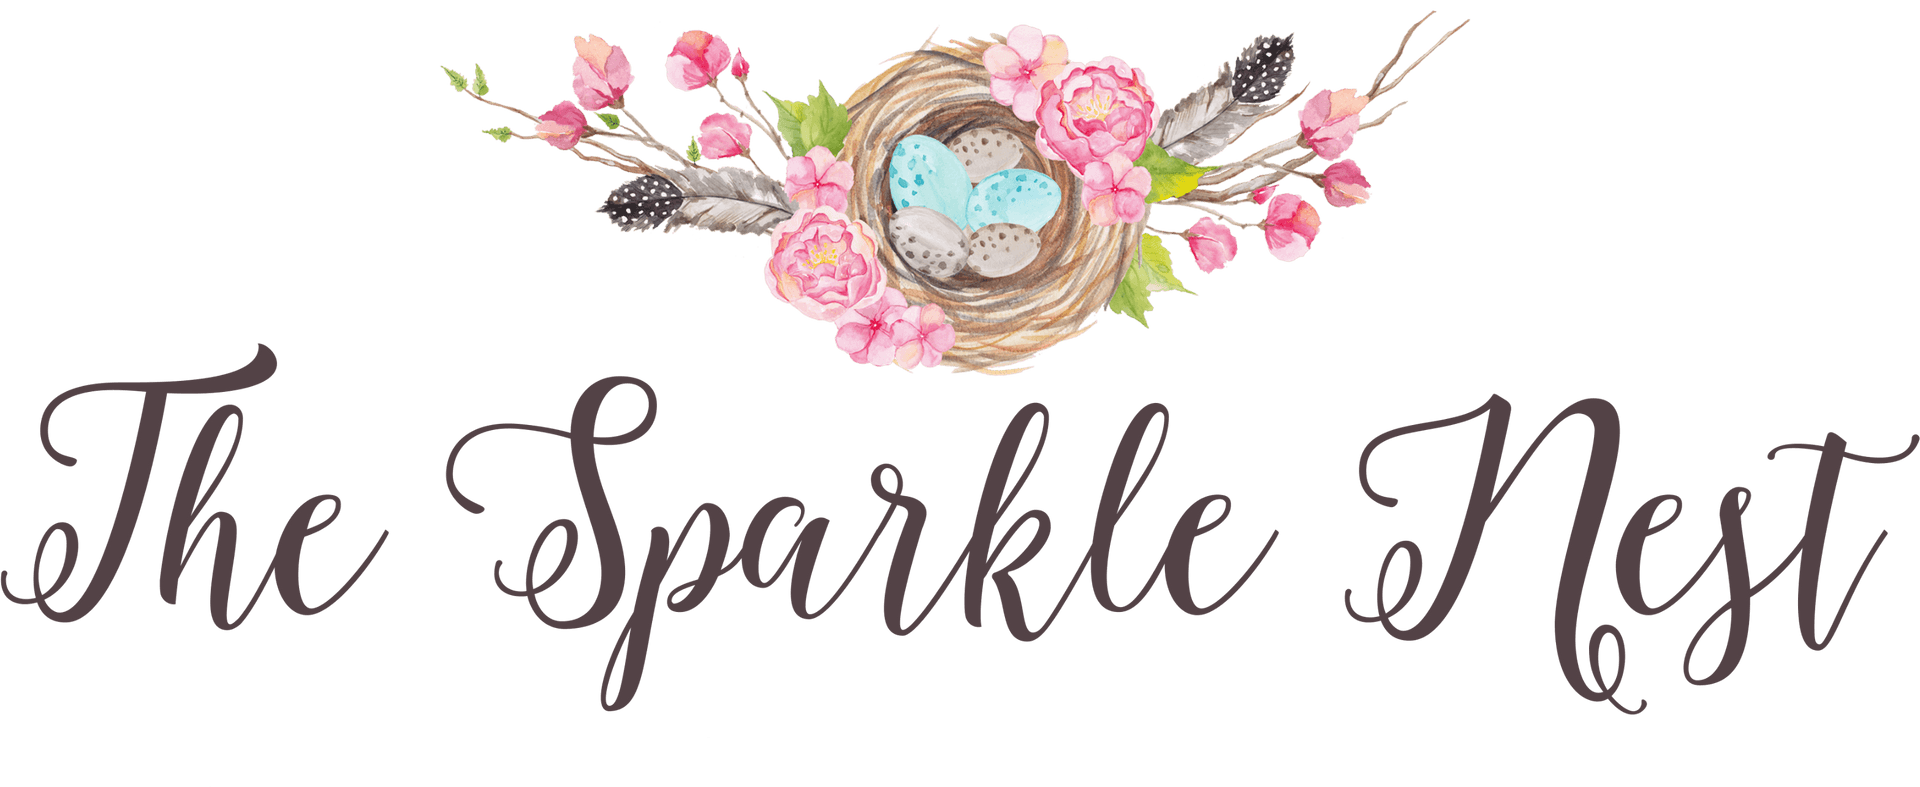 Sparkle Nest Logo PNG image